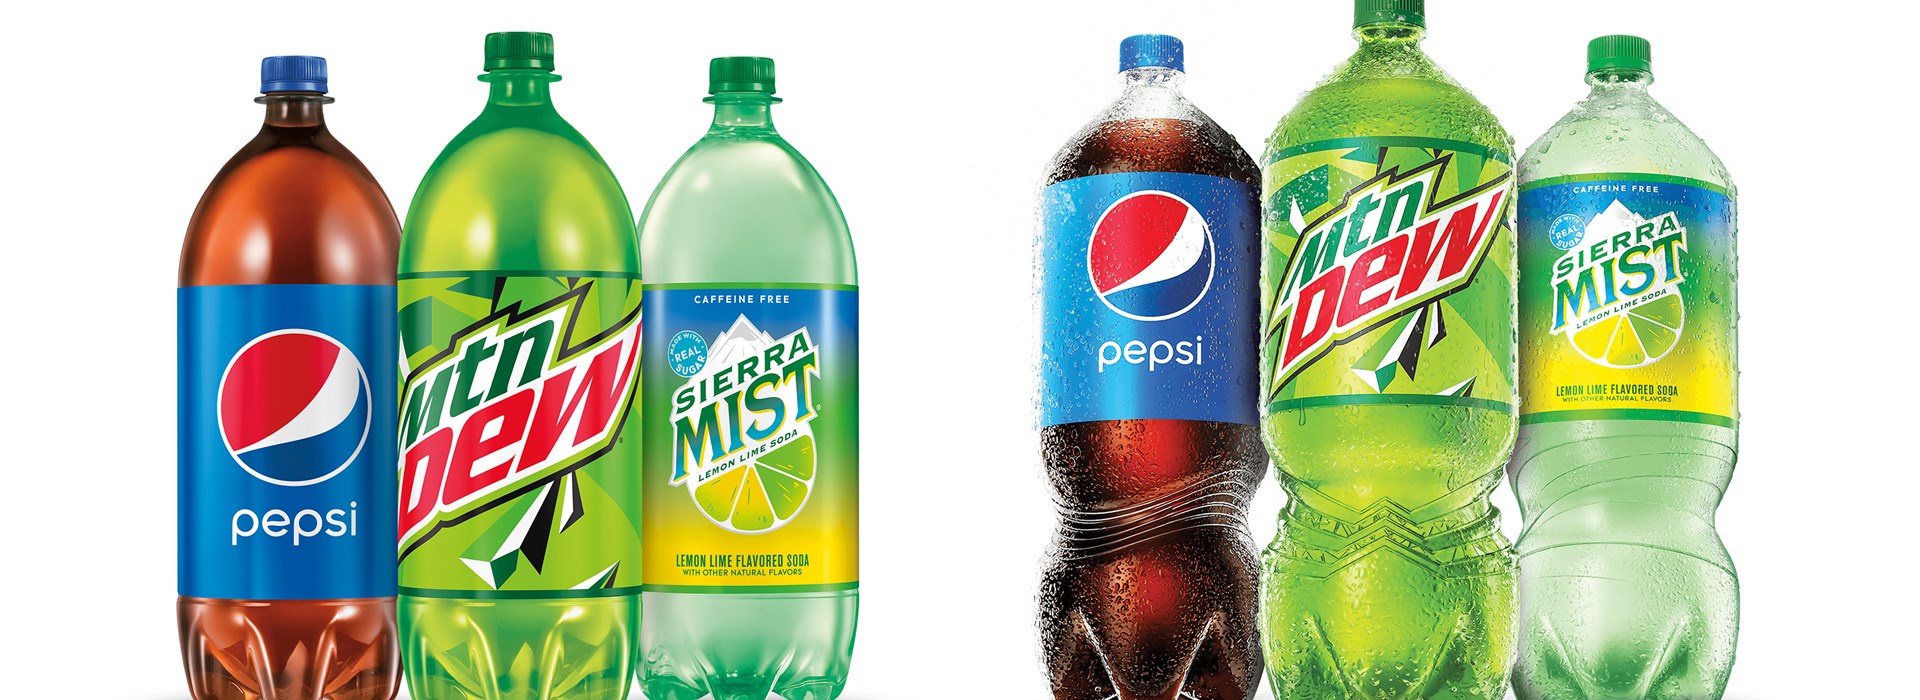 Packaging Prototypes PepsiCo